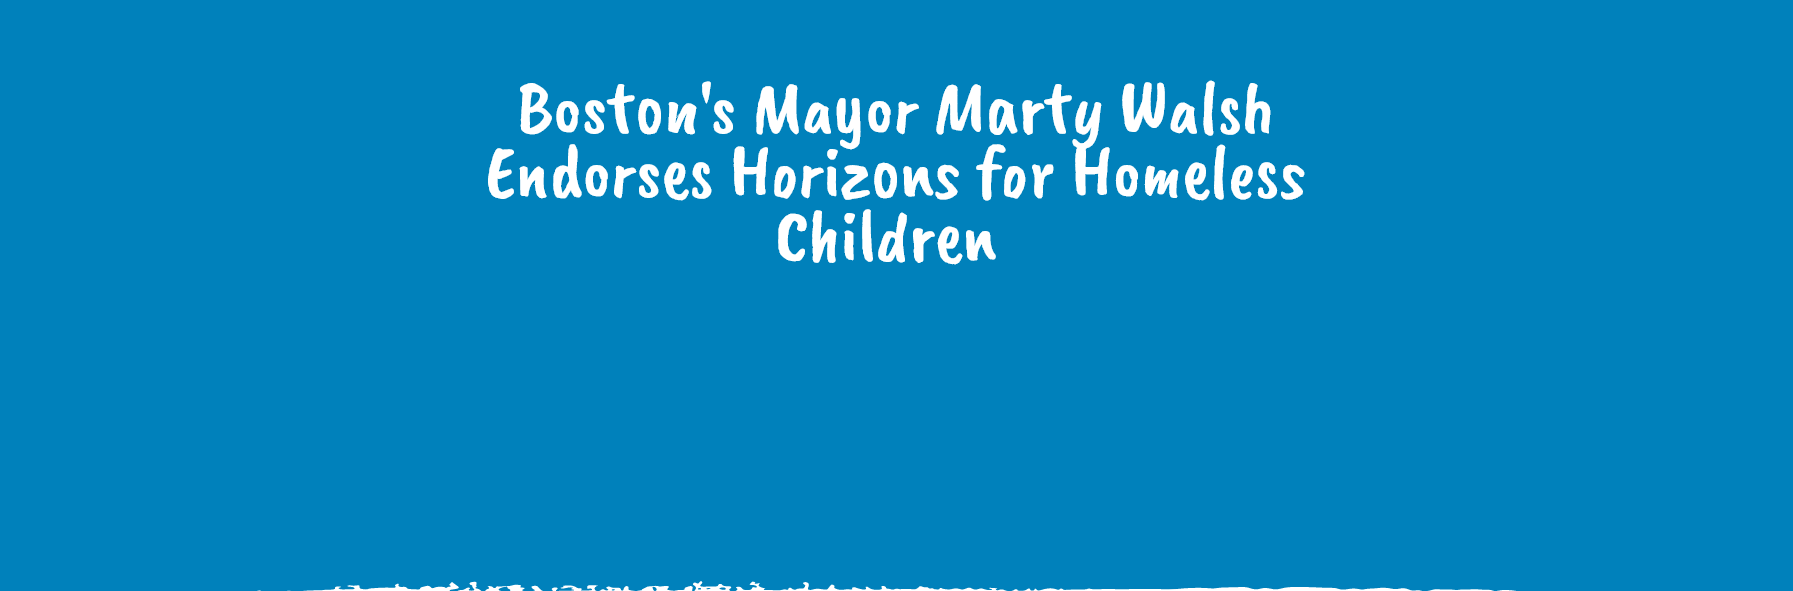 Boston's Mayor Marty Walsh Endorses Horizons for Homeless Children